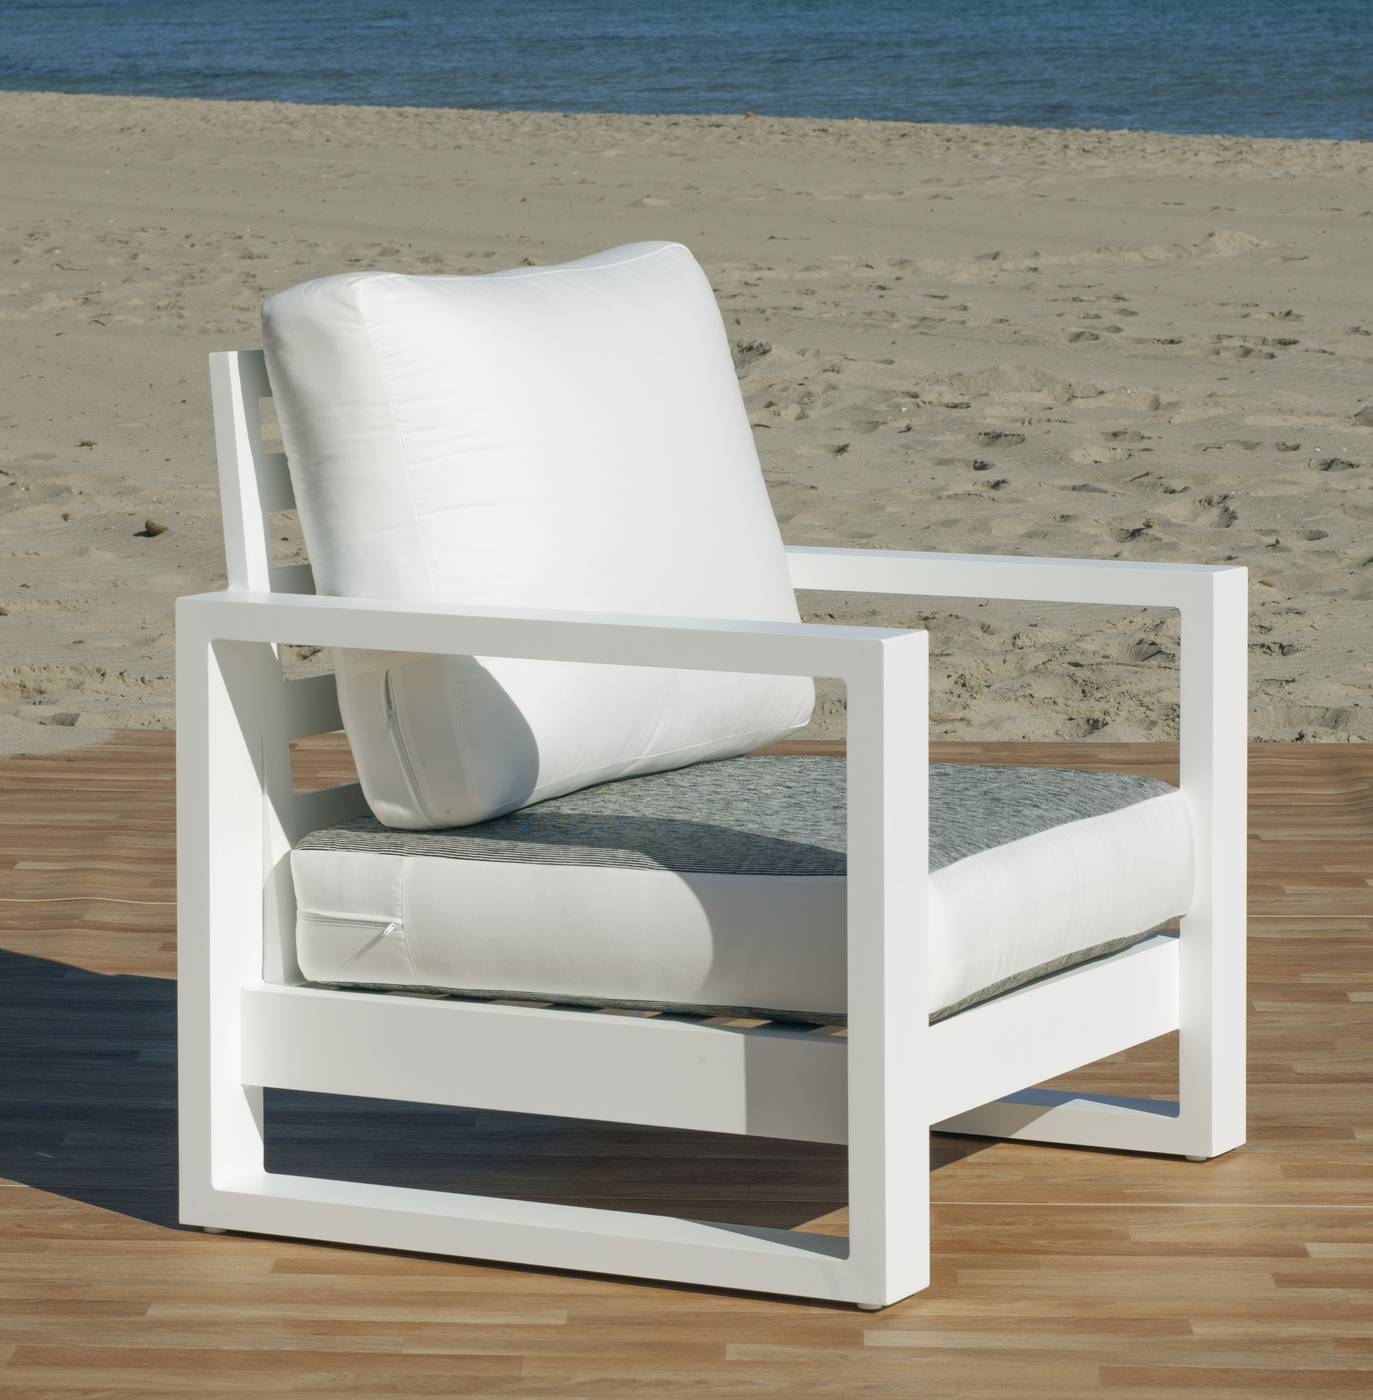 Set Aluminio Luxe Cartago-8 - Conjunto lujoso y robusto de aluminio: 1 sofá de 3 plazas + 2 sillones + 1 mesa de centro + cojines.